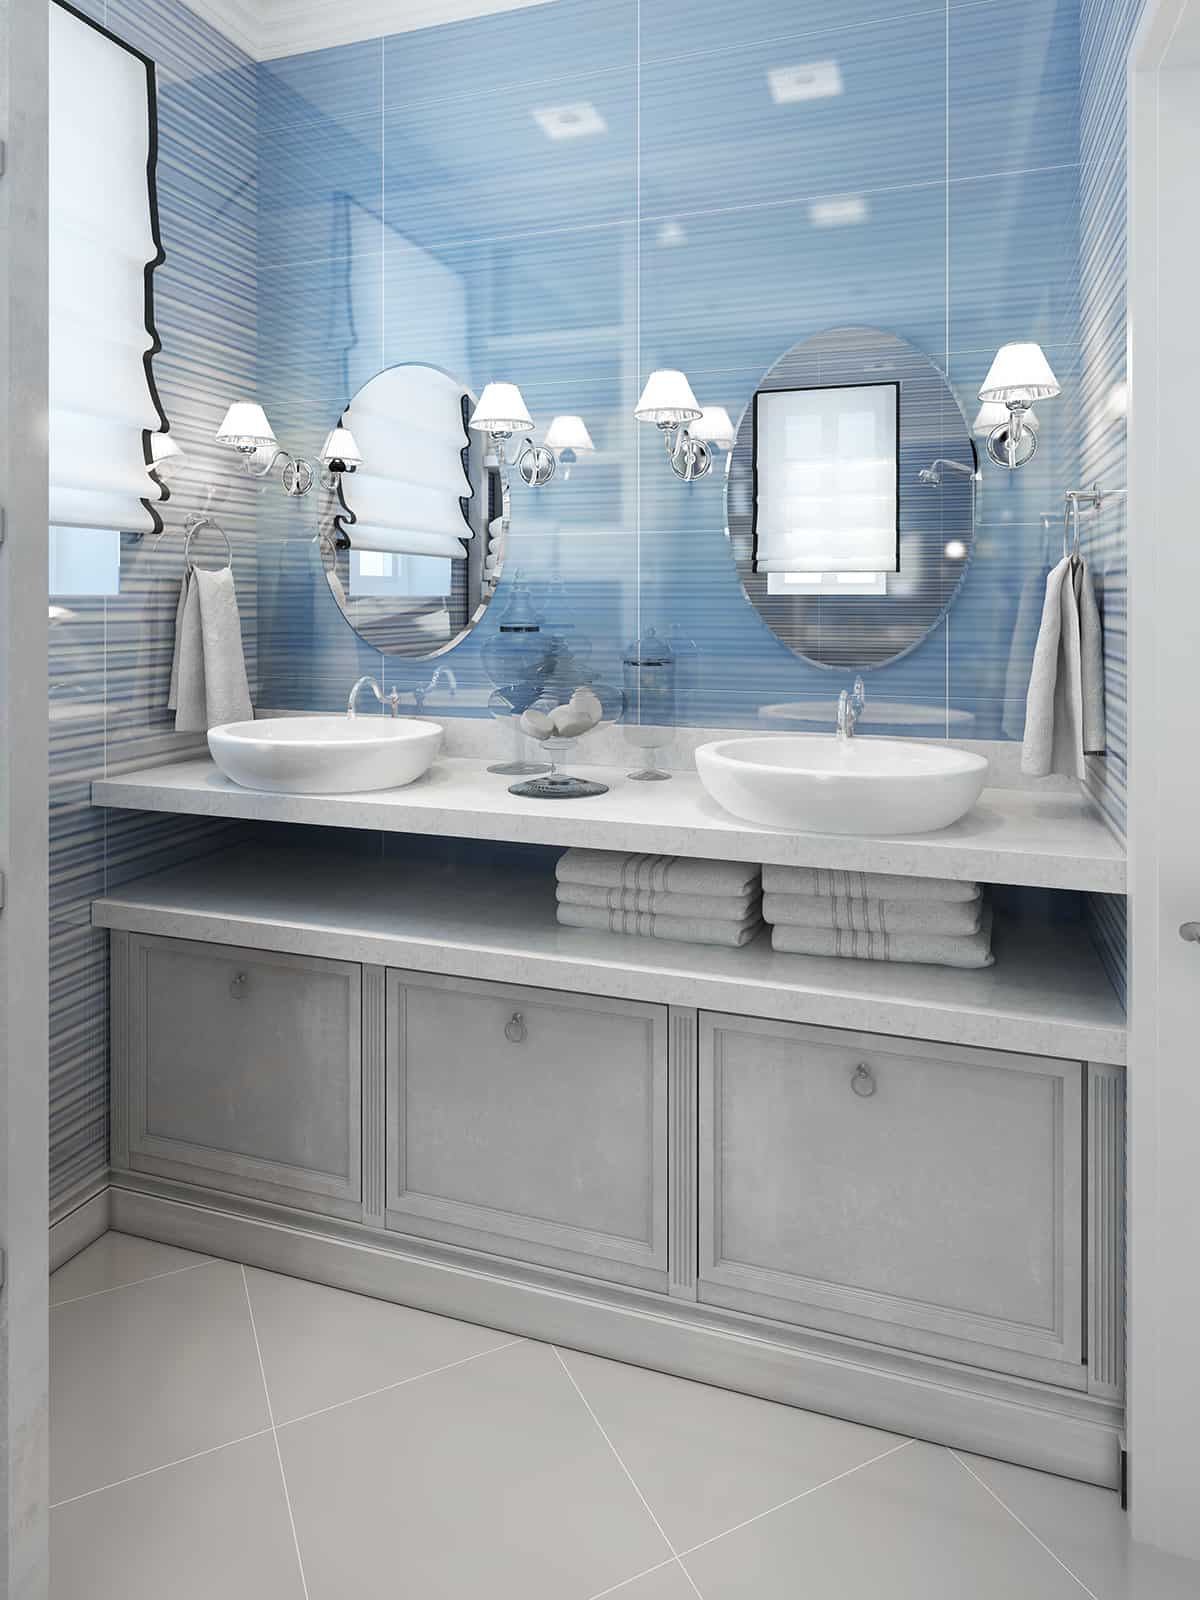 淺藍色的牆壁和淺灰色的浴室櫥櫃